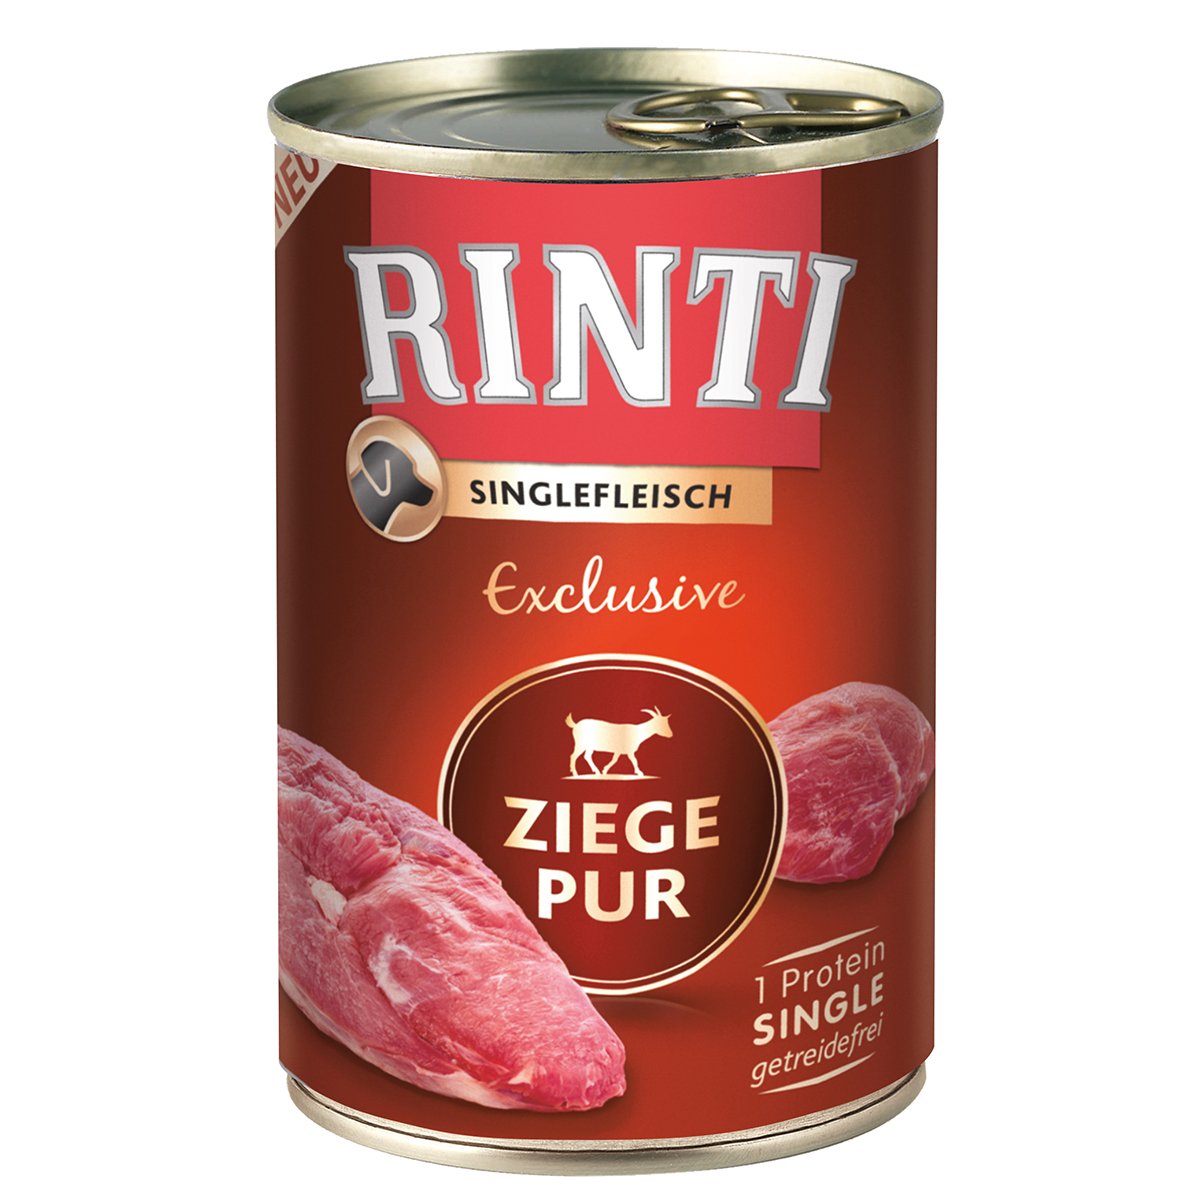 Rinti Singlefleisch Exclusive Ziege pur 12x400g